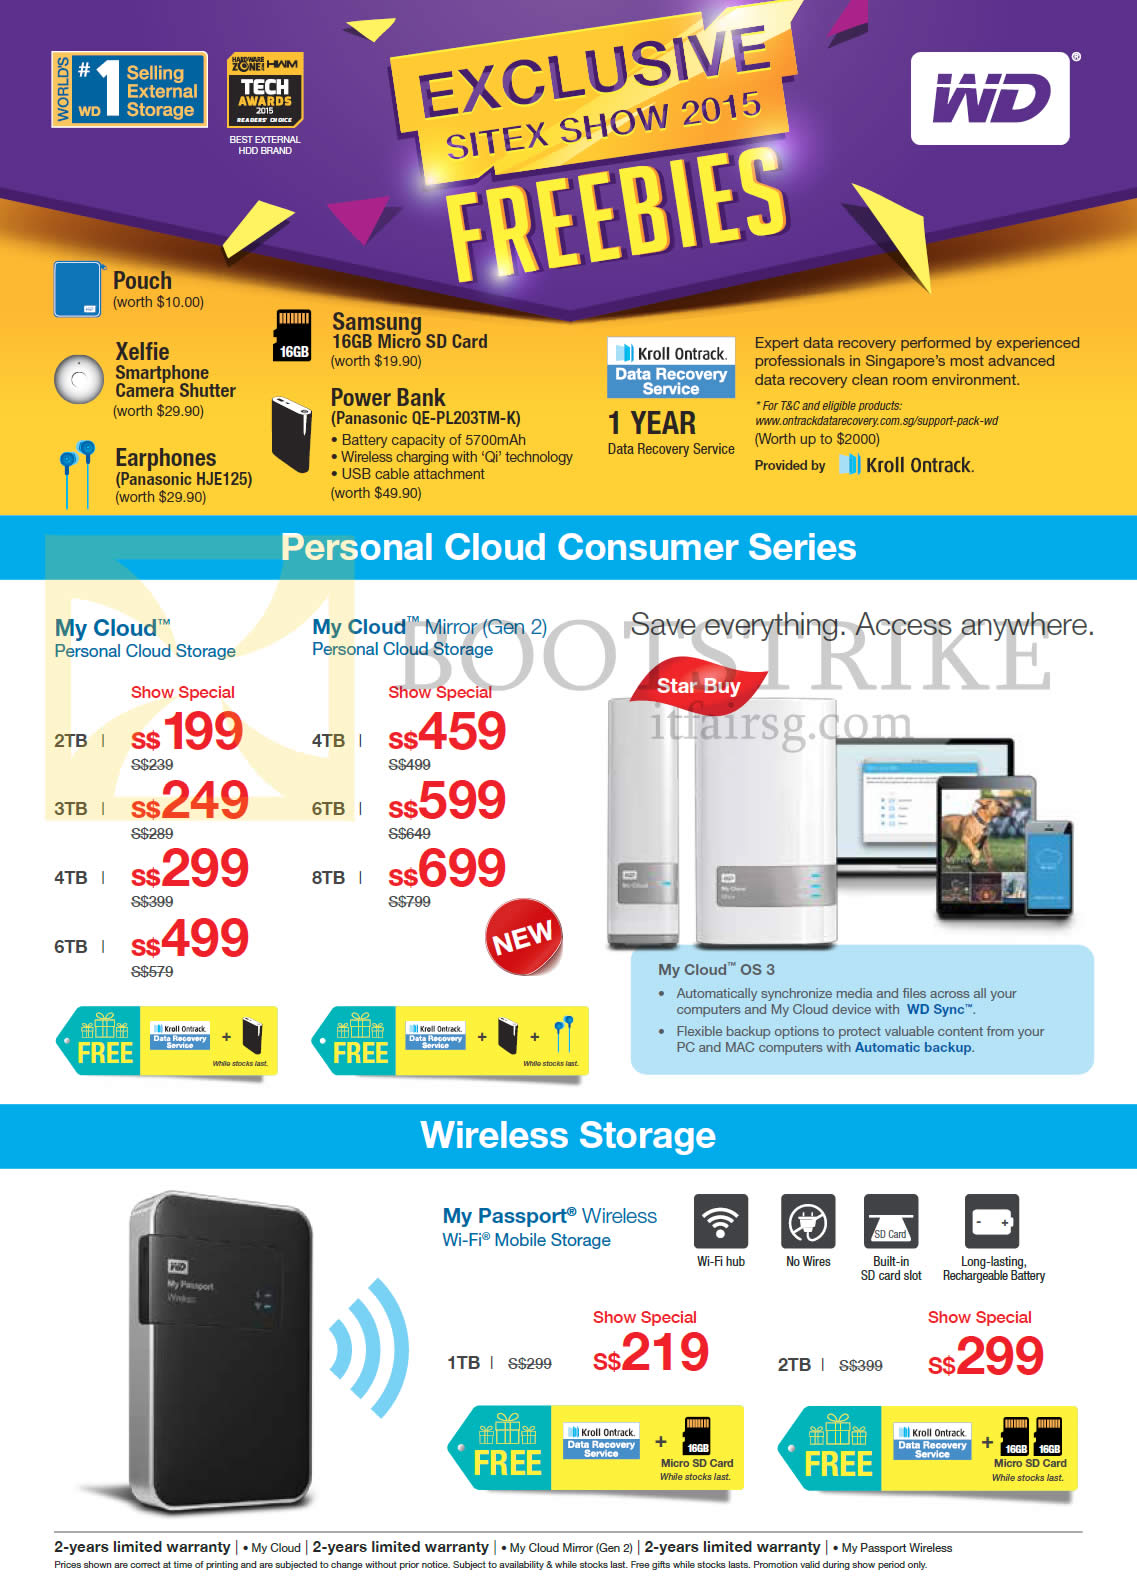 SITEX 2015 price list image brochure of Western Digital Personal Cloud Consumer Series, Wireless Storage, My Cloud, My Cloud Mirror, My Passport, 1TB, 2TB, 3TB, 4TB, 5TB, 6TB, 8TB